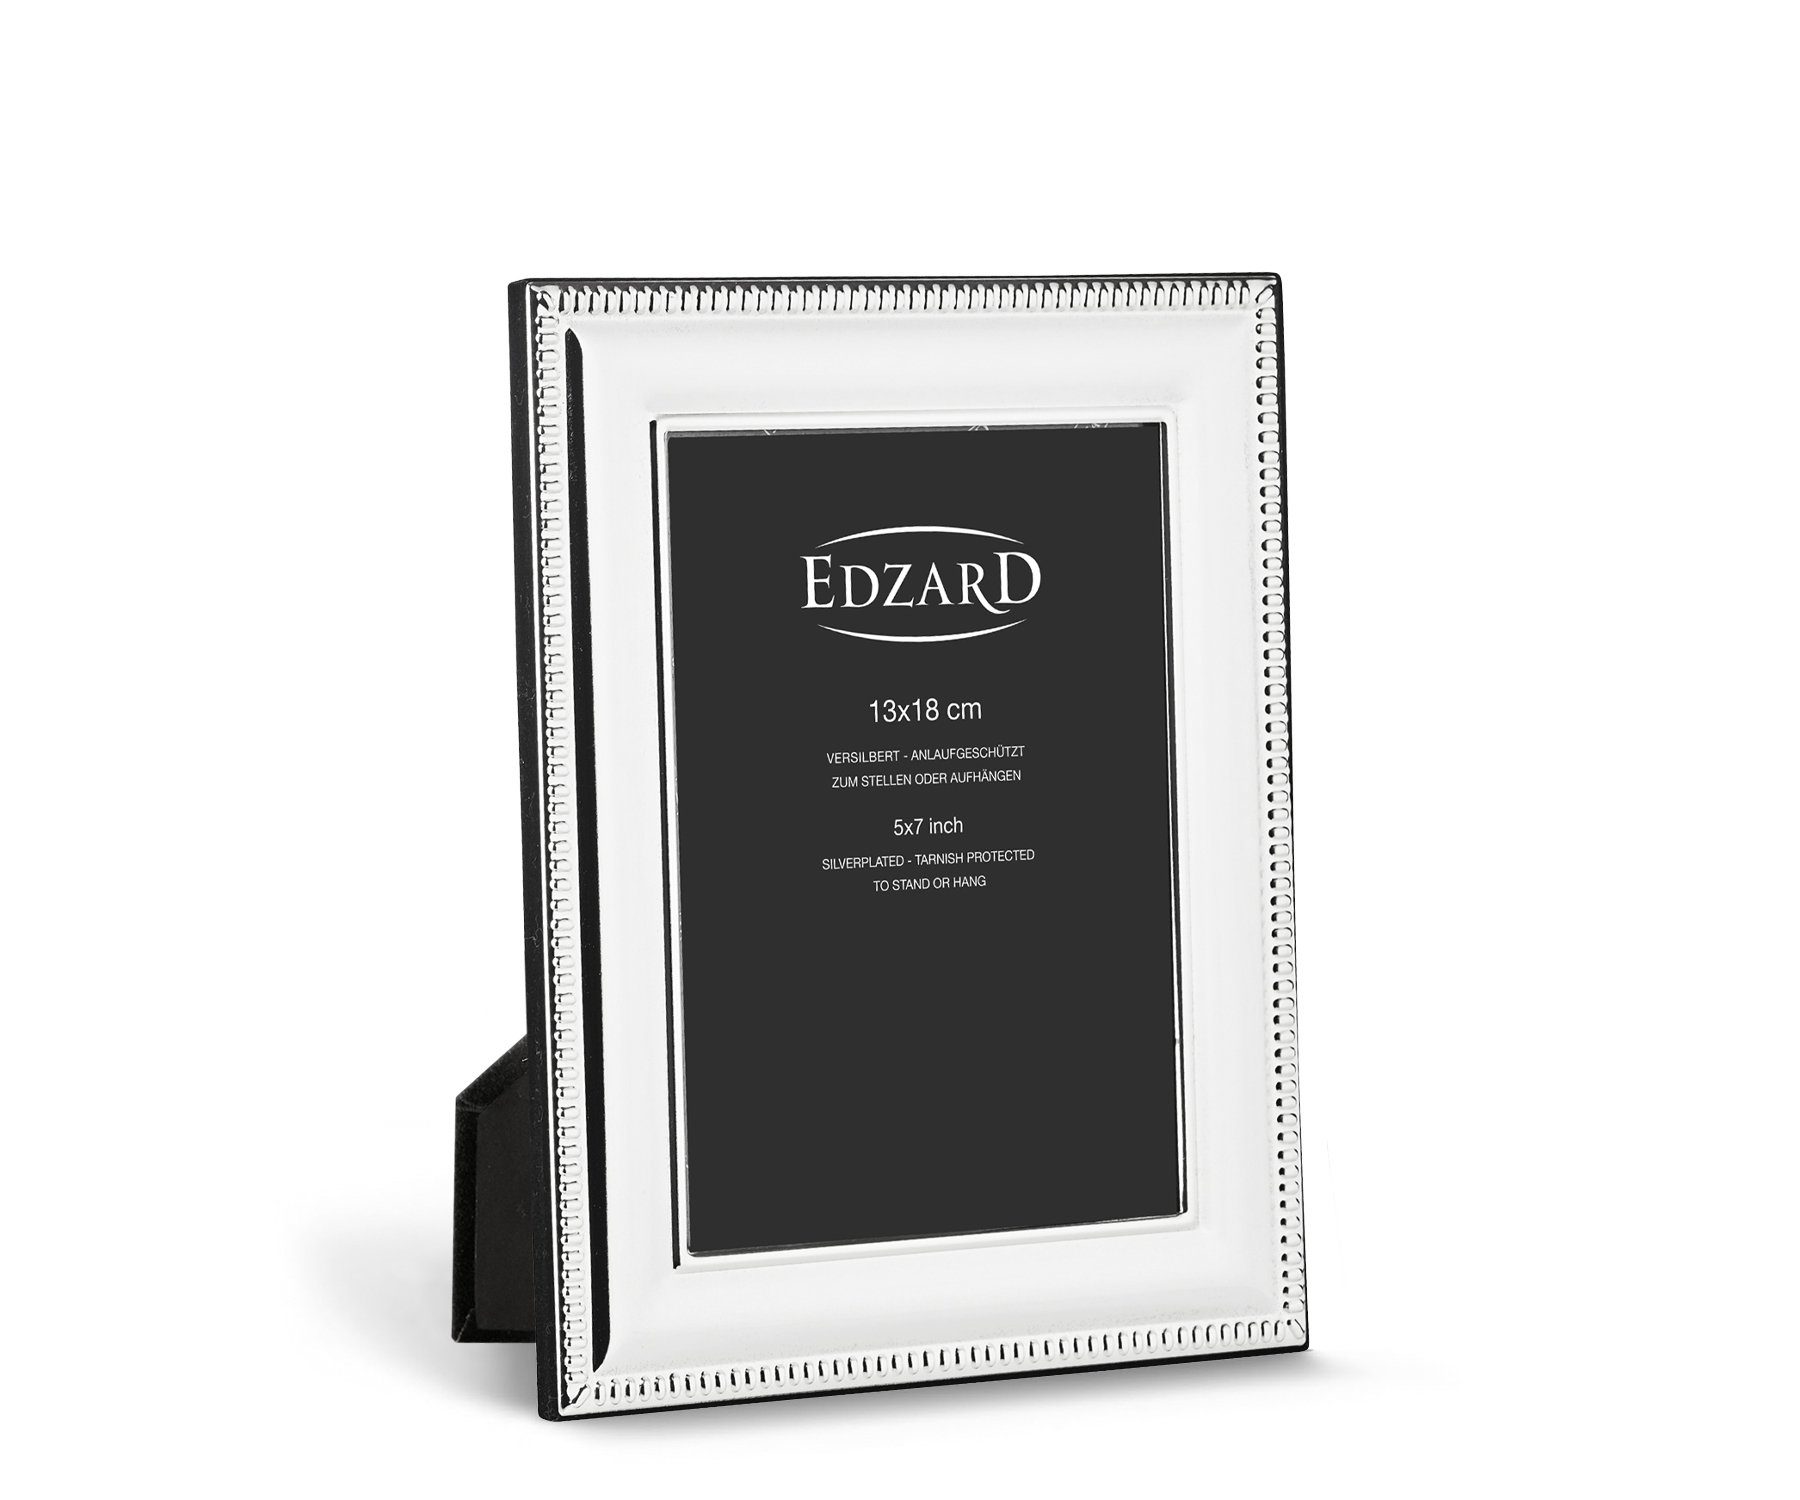 EDZARD Bilderrahmen Novara, versilbert und anlaufgeschützt, für 13x18 cm Bilder - Fotorahmen